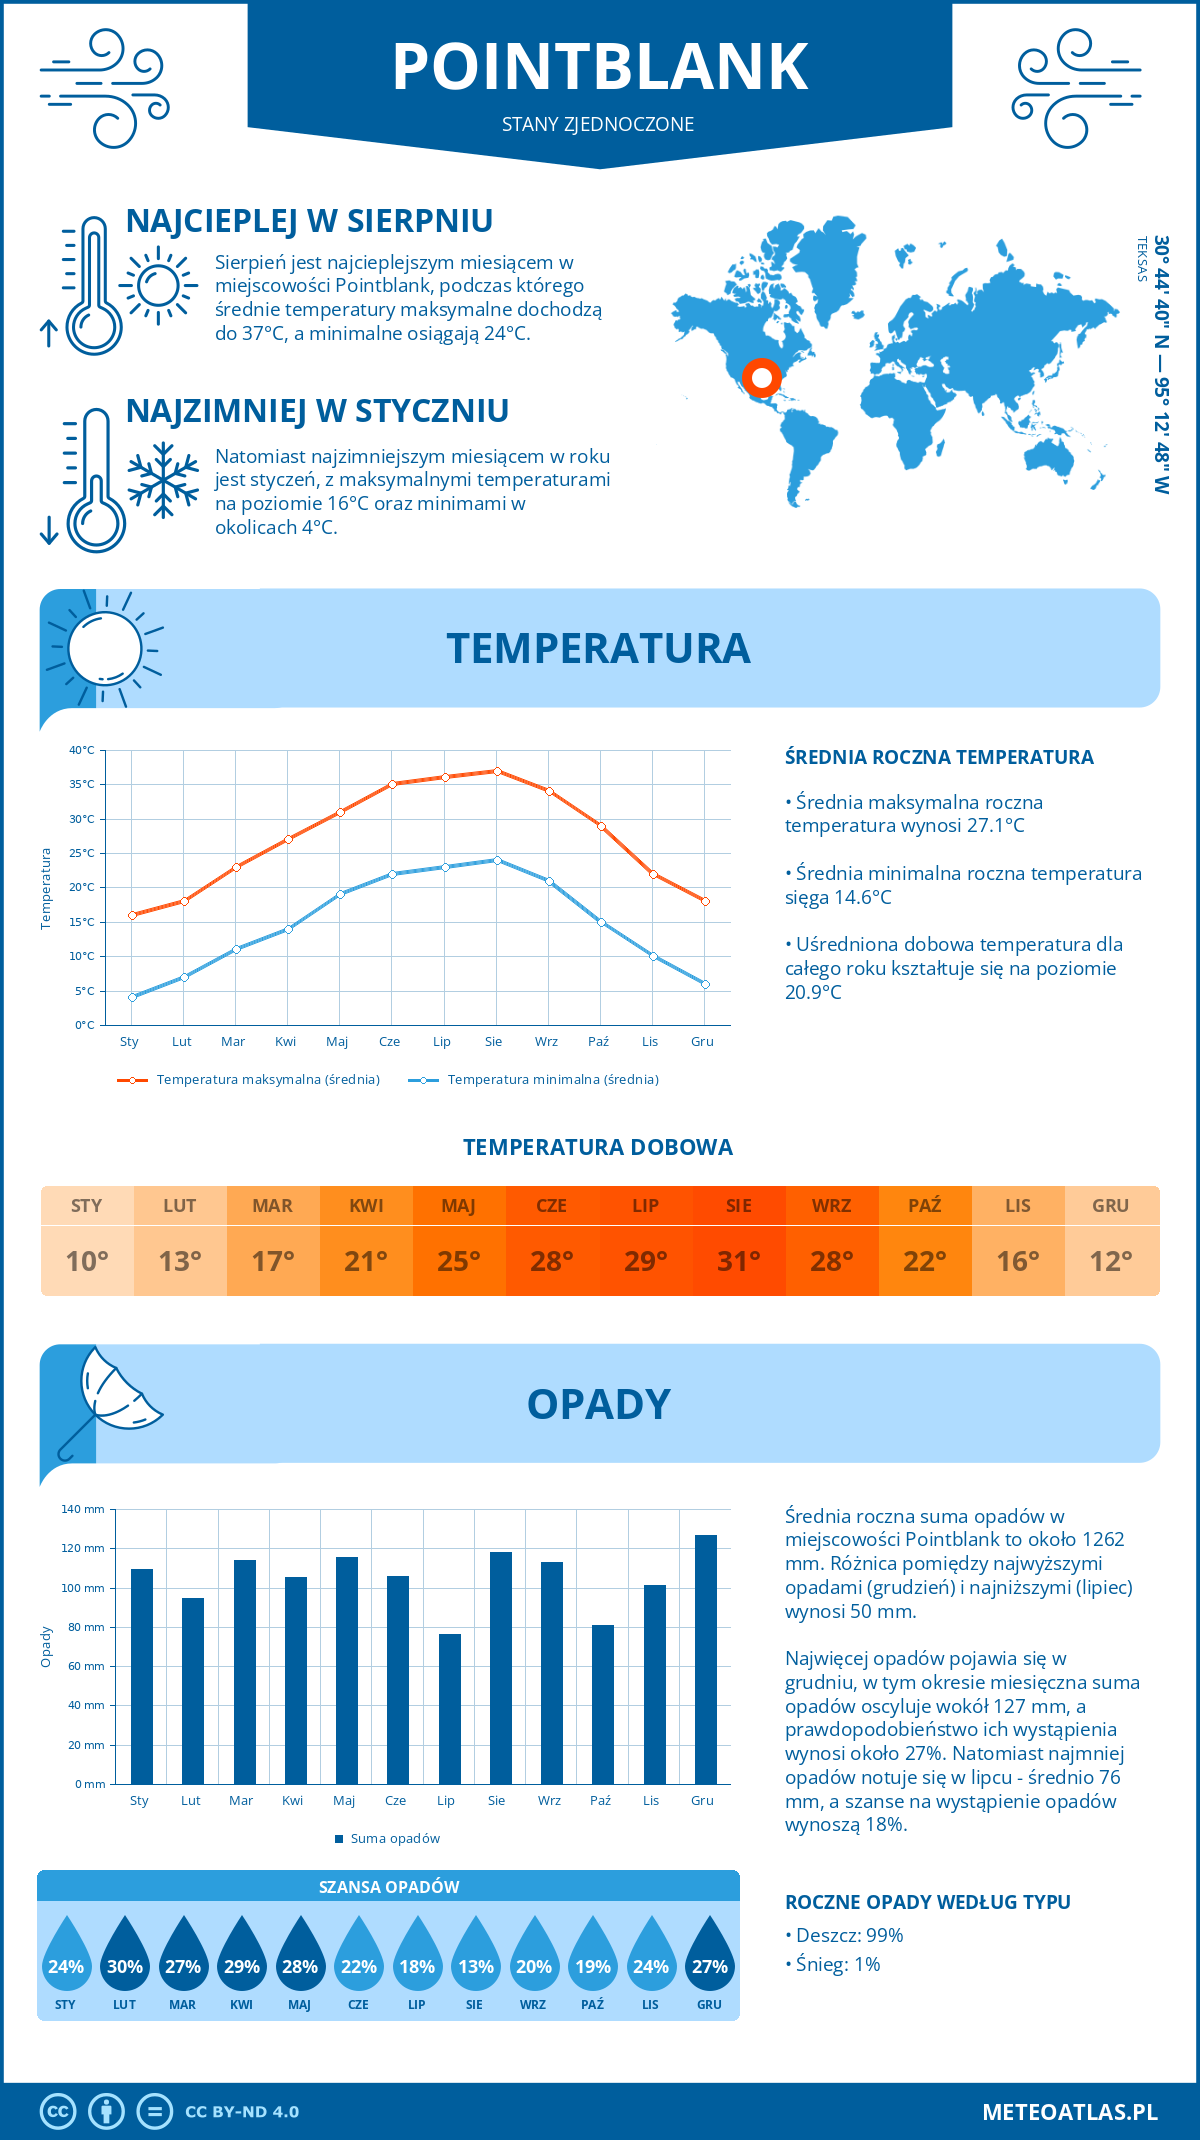 Pogoda Pointblank (Stany Zjednoczone). Temperatura oraz opady.